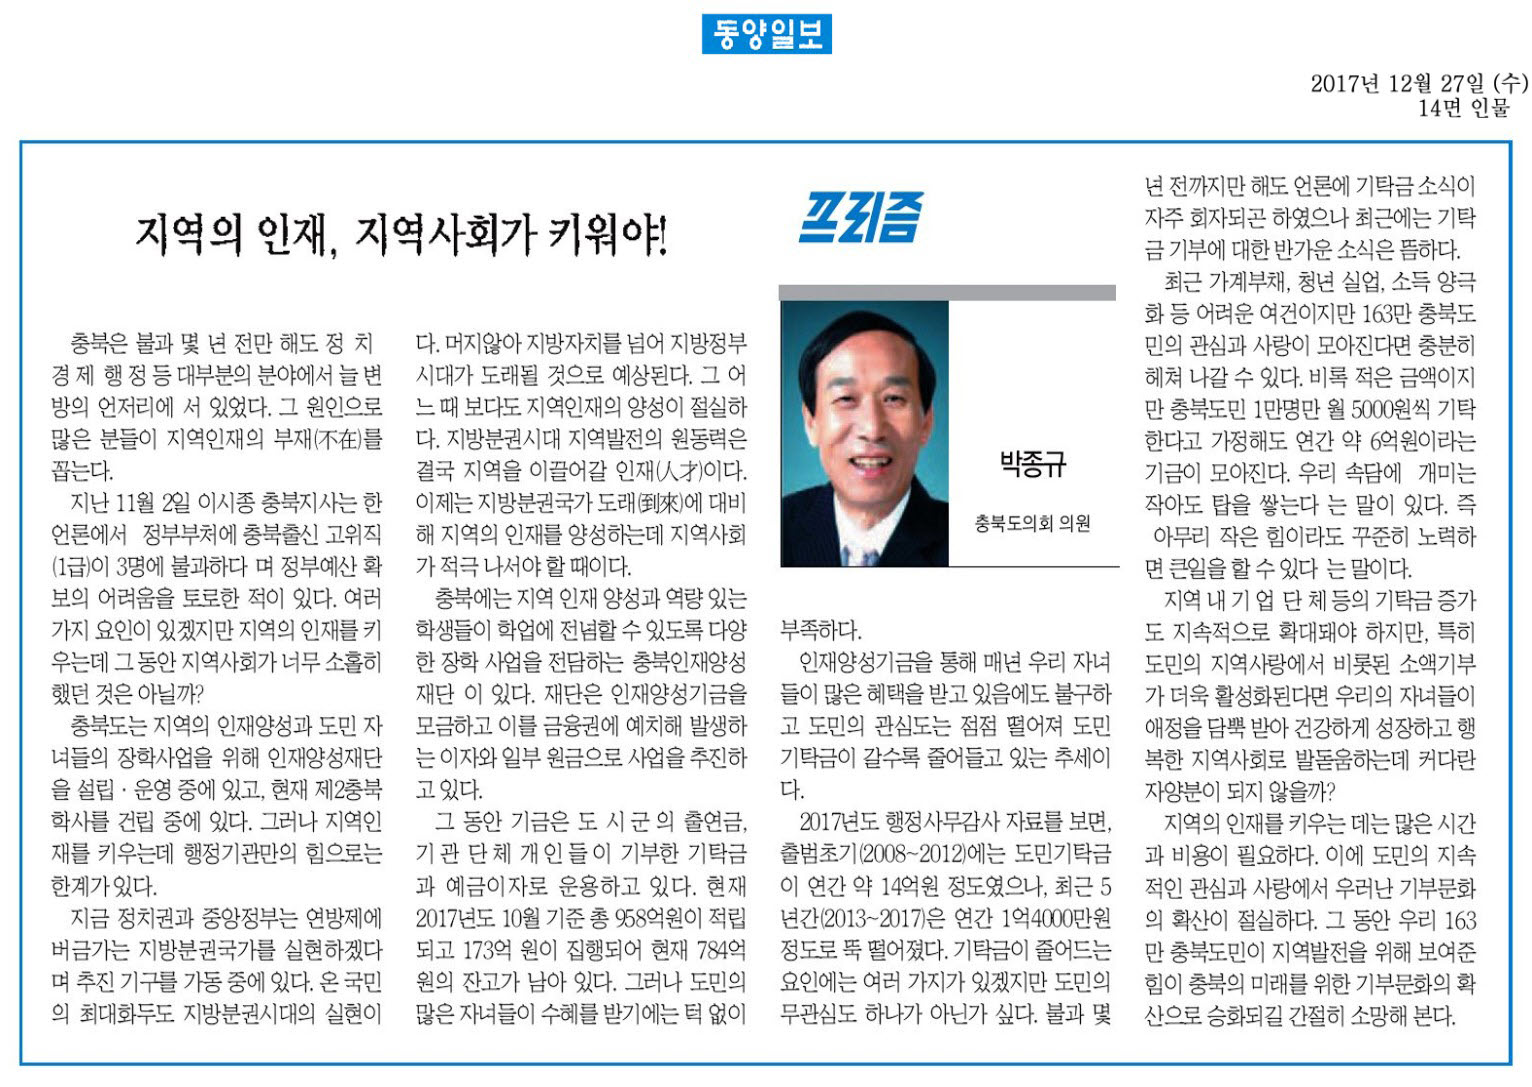 지역의 인재, 지역사회가 키워야!-박종규 의원(동양일보 2017년 12월 27일) - 1